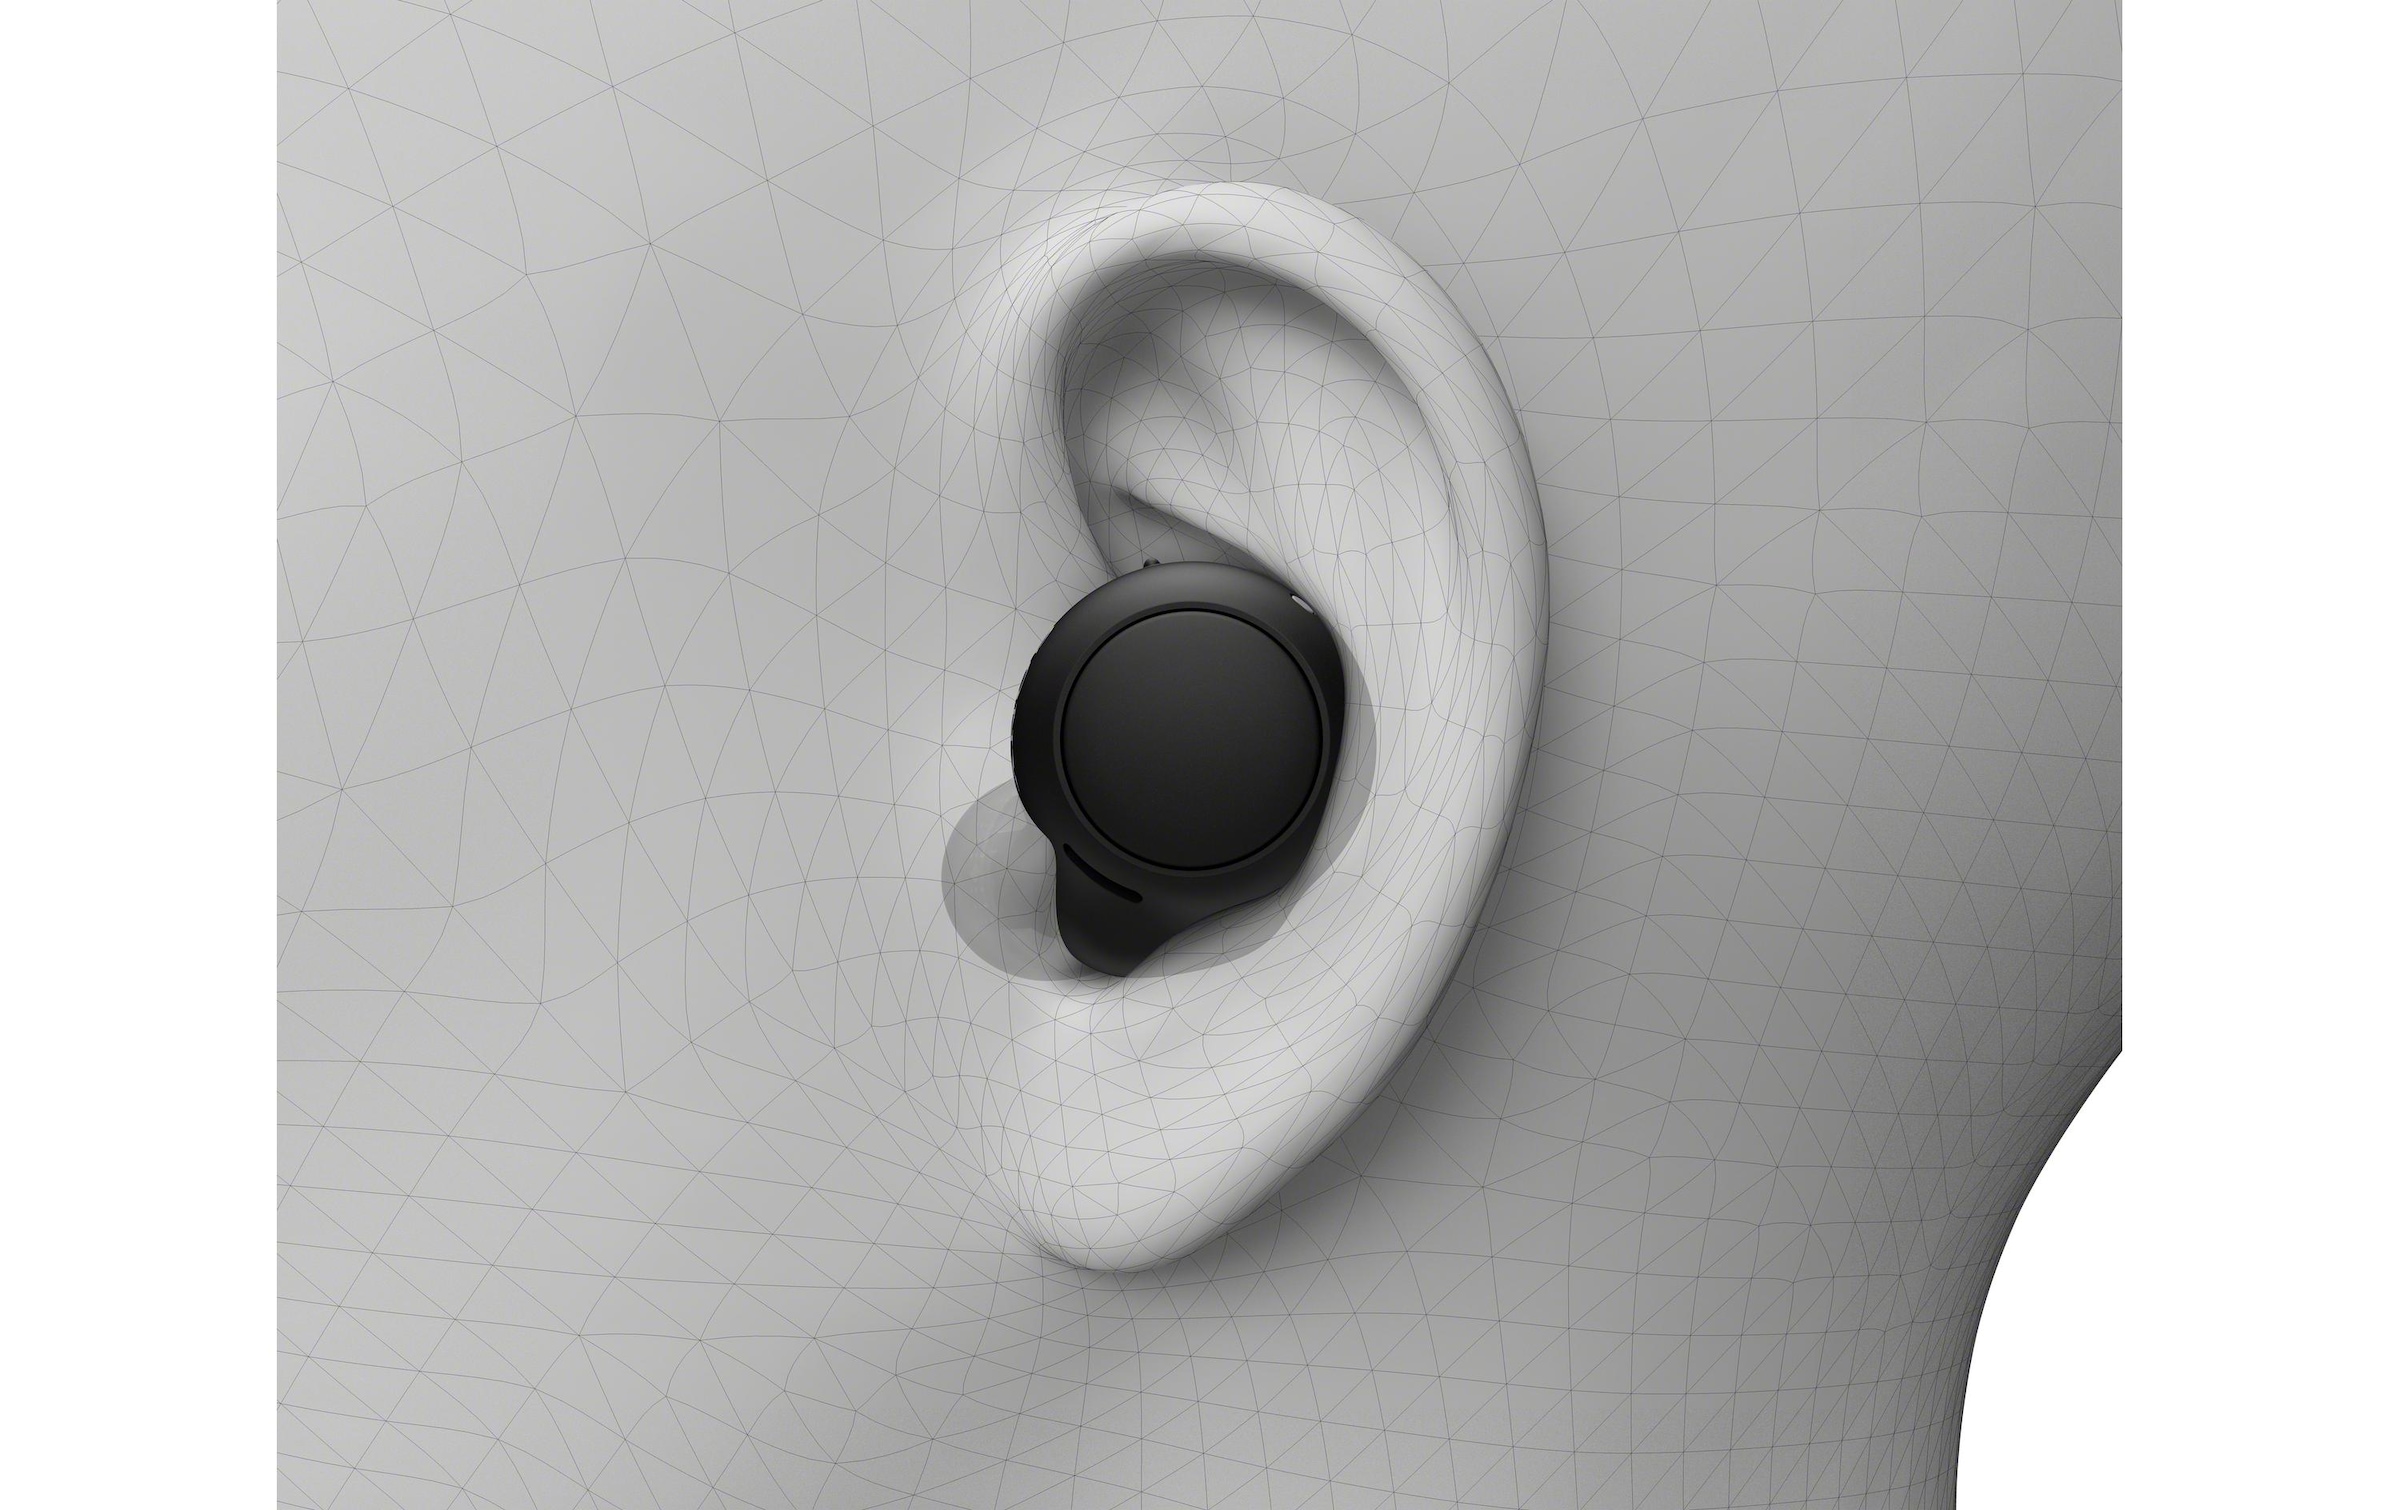 Sony wireless In-Ear-Kopfhörer »Wireless In-Ear Kopfhörer«, Bluetooth